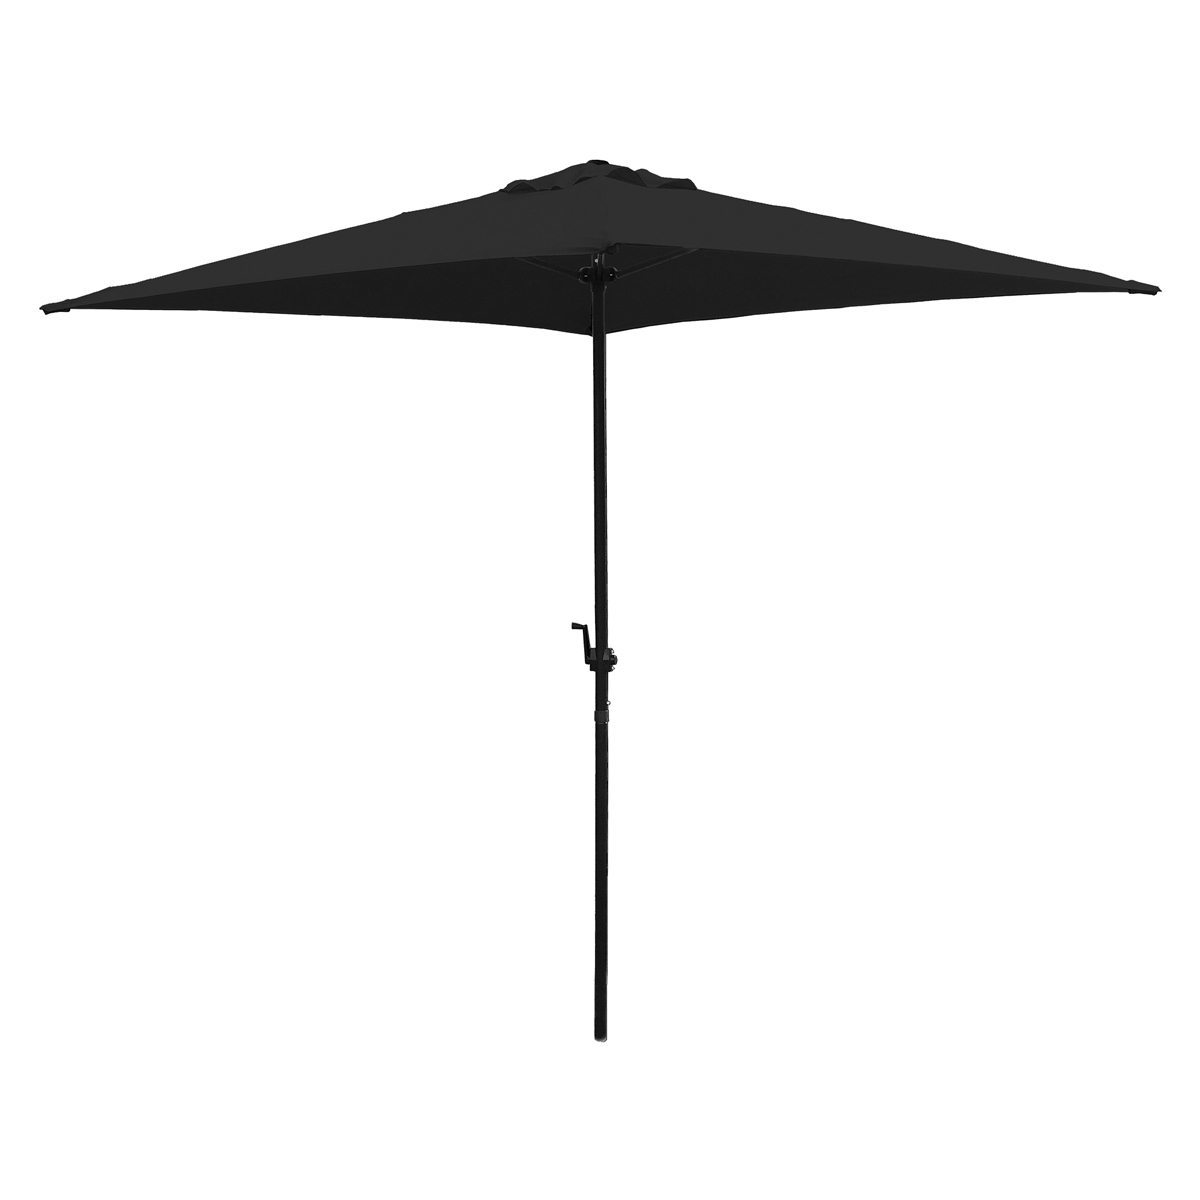 UMQ65BKOBD-06 Umbrella, 2.37m/93.3 in H, 6.5 ft W Canopy, 6.5 ft L Canopy, Square Canopy